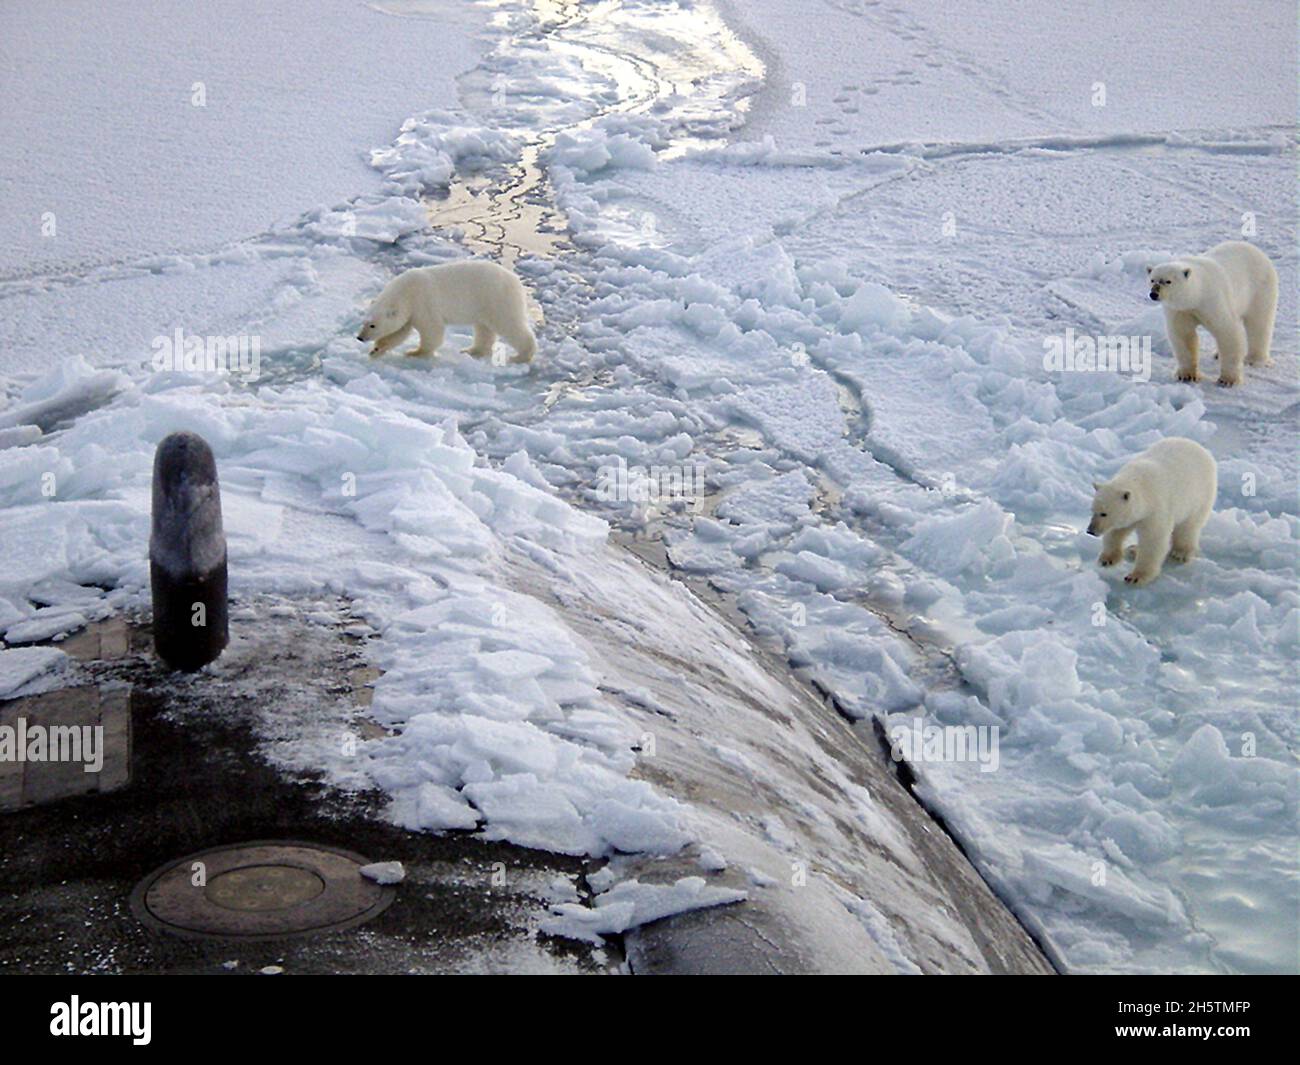 Tres osos polares se acercan al arco estribor del submarino de ataque rápido USS Honolulu, de la Marina de los Estados Unidos, de la clase Los Ángeles, mientras que emergieron a 280 millas del Polo Norte el 11 de octubre de 2003 frente a la costa norte de Alaska. Los osos pasaron dos horas investigando el barco que estaba en una operación clasificada. Foto de stock